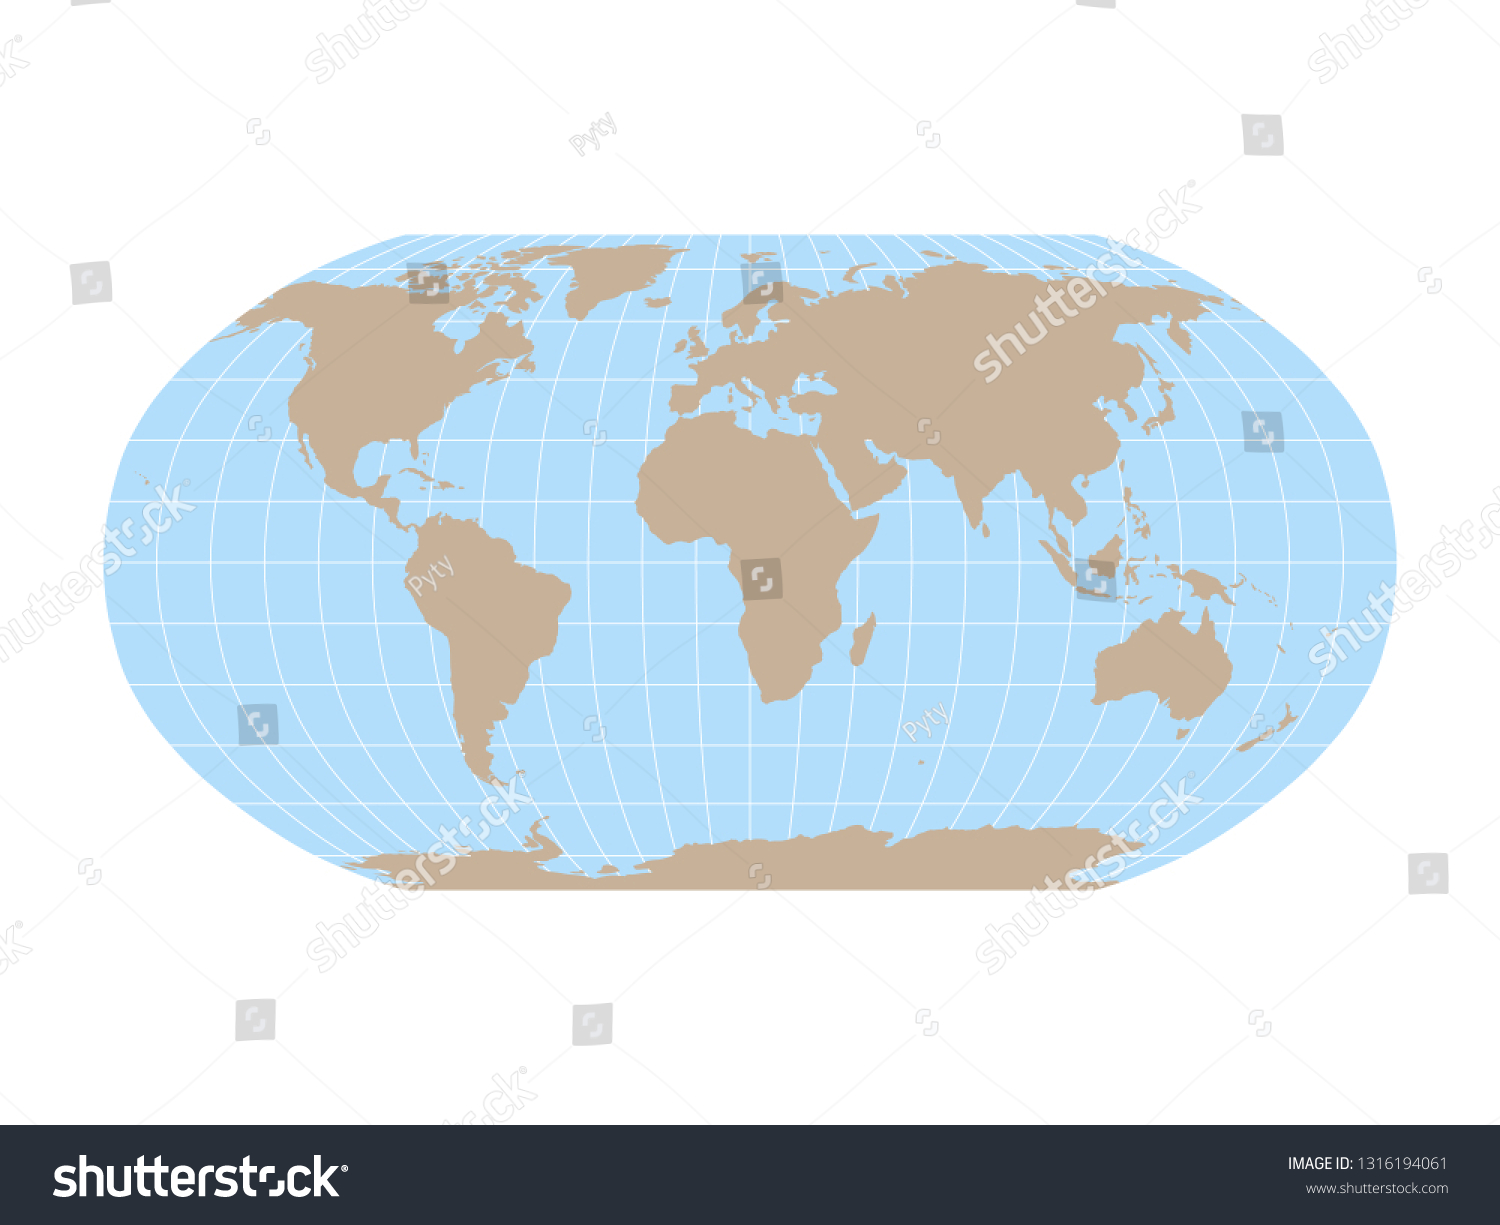 Mapa Mundial En La Proyección Robinson Vector De Stock Libre De Regalías 1316194061 4164